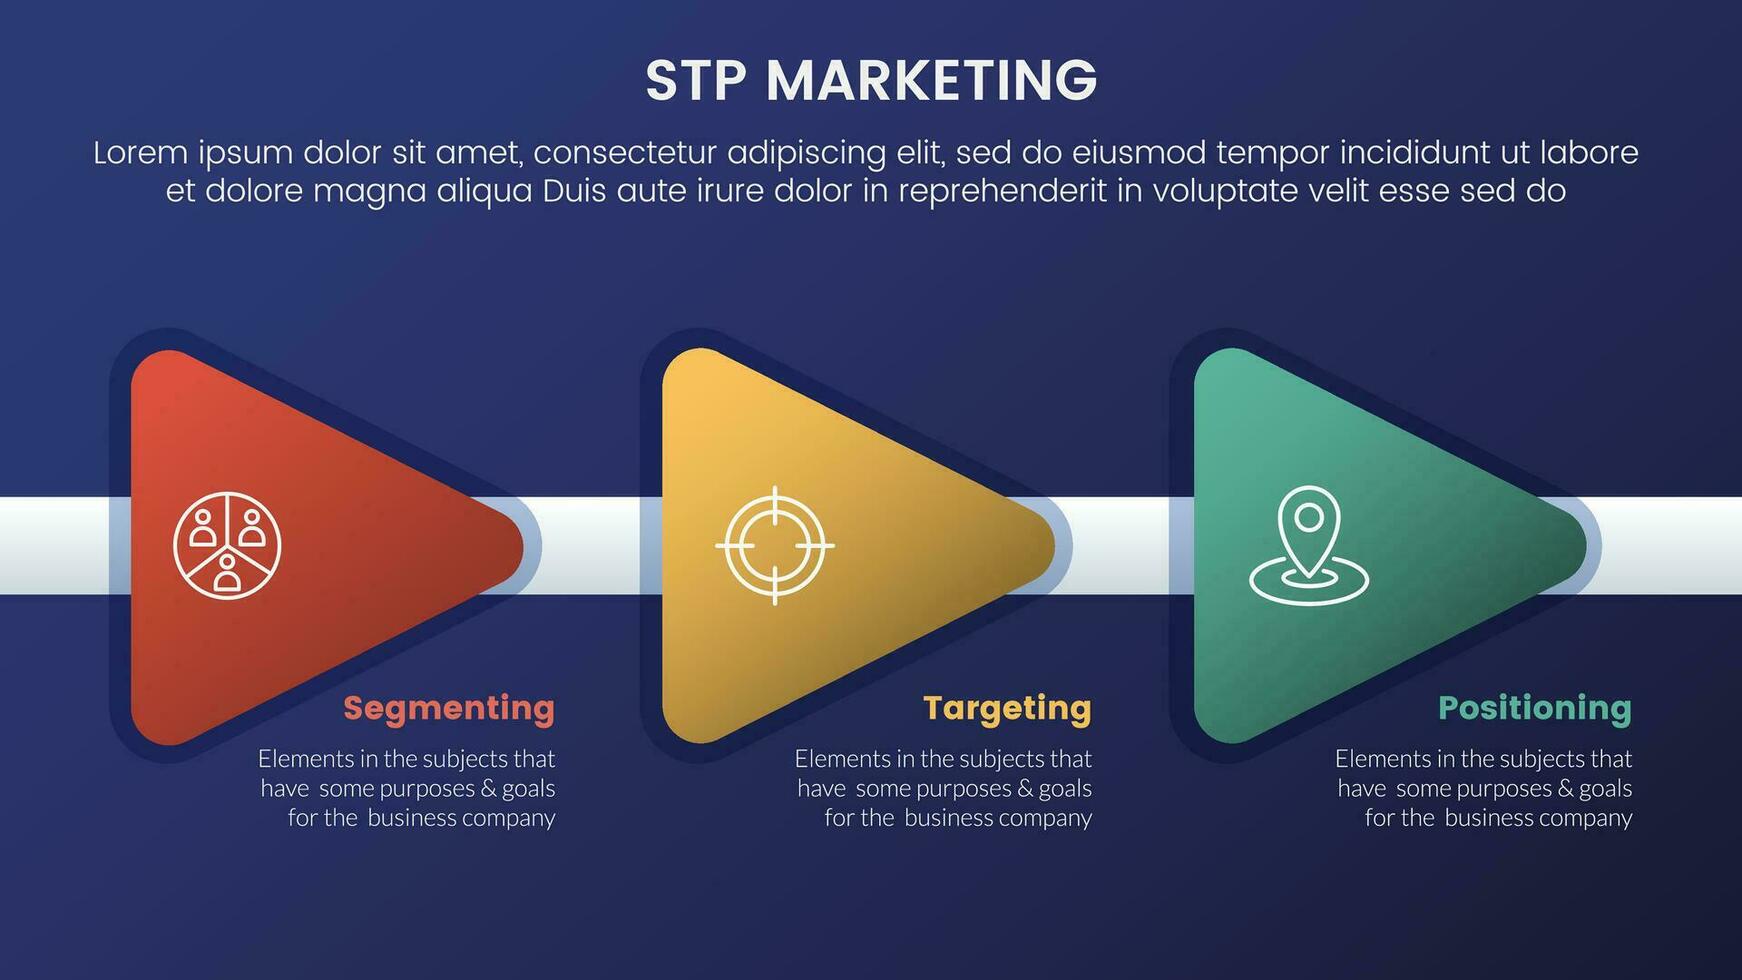 stp márketing estrategia modelo para segmentación cliente infografía 3 etapas con triángulo flecha Derecha dirección y oscuro estilo degradado tema concepto para diapositiva presentación vector